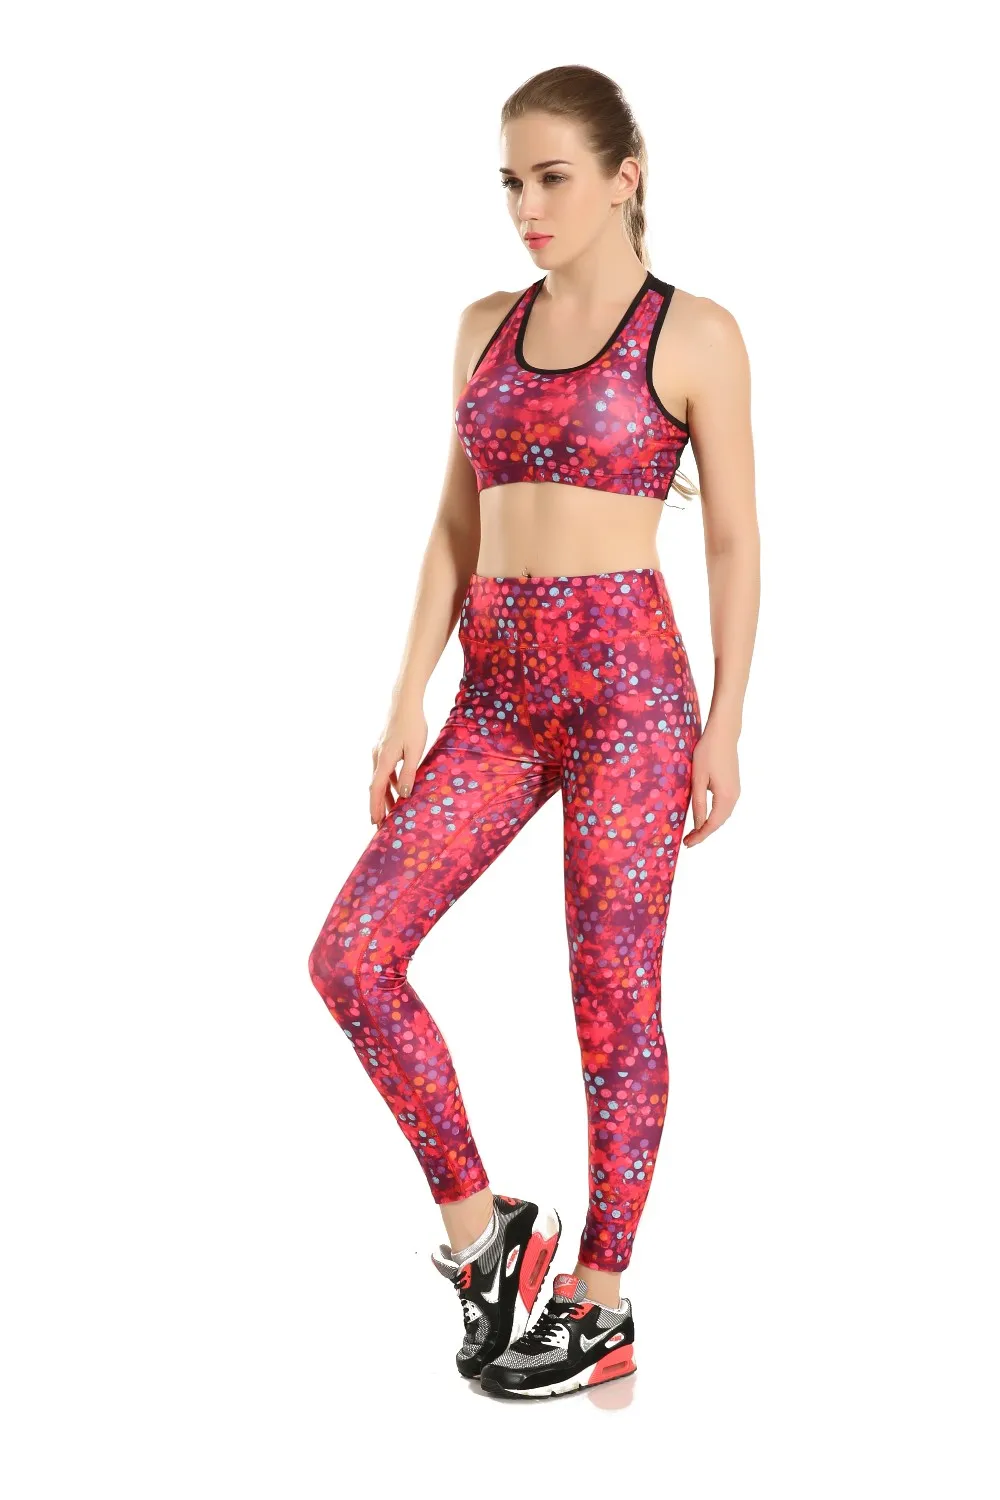 4 узора Европейский Стиль Серые геометрические брюки для бега женская спортивная одежда красный градиентный цвет женские колготки